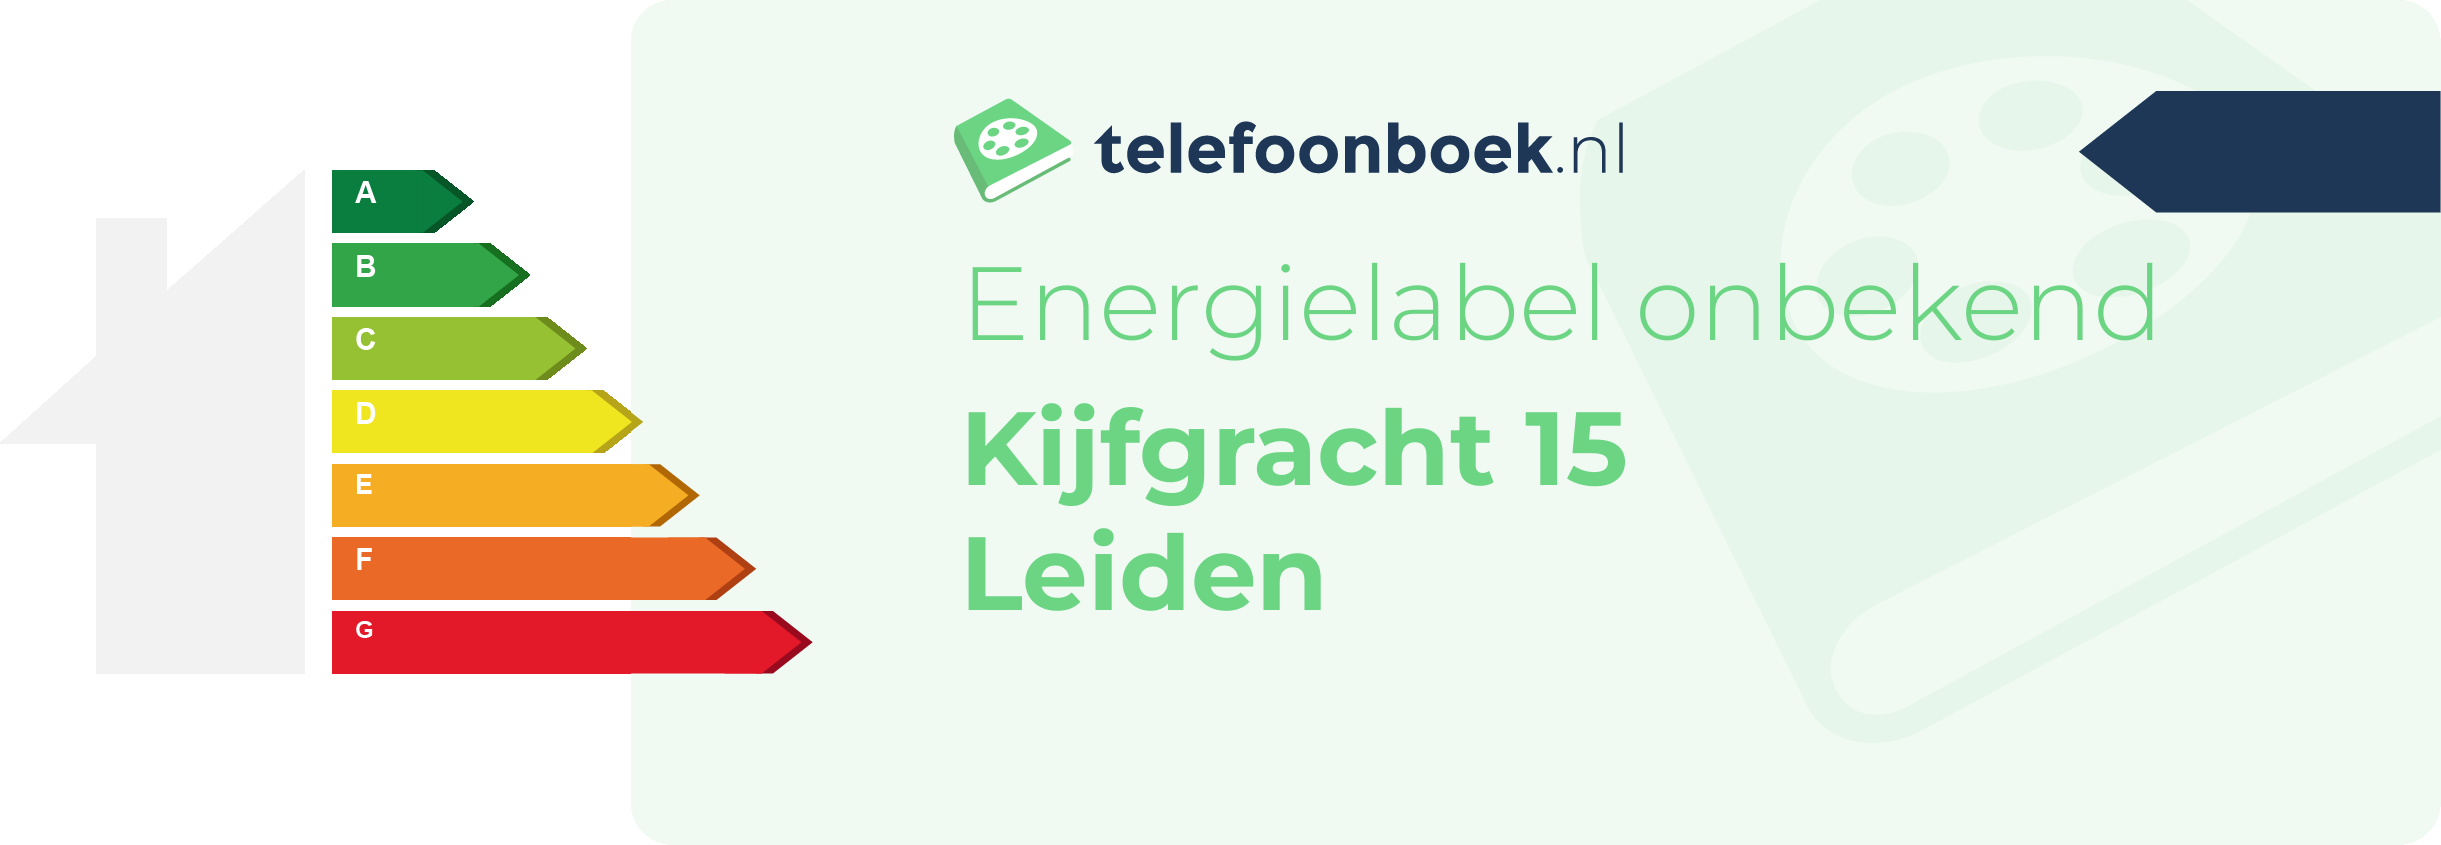 Energielabel Kijfgracht 15 Leiden